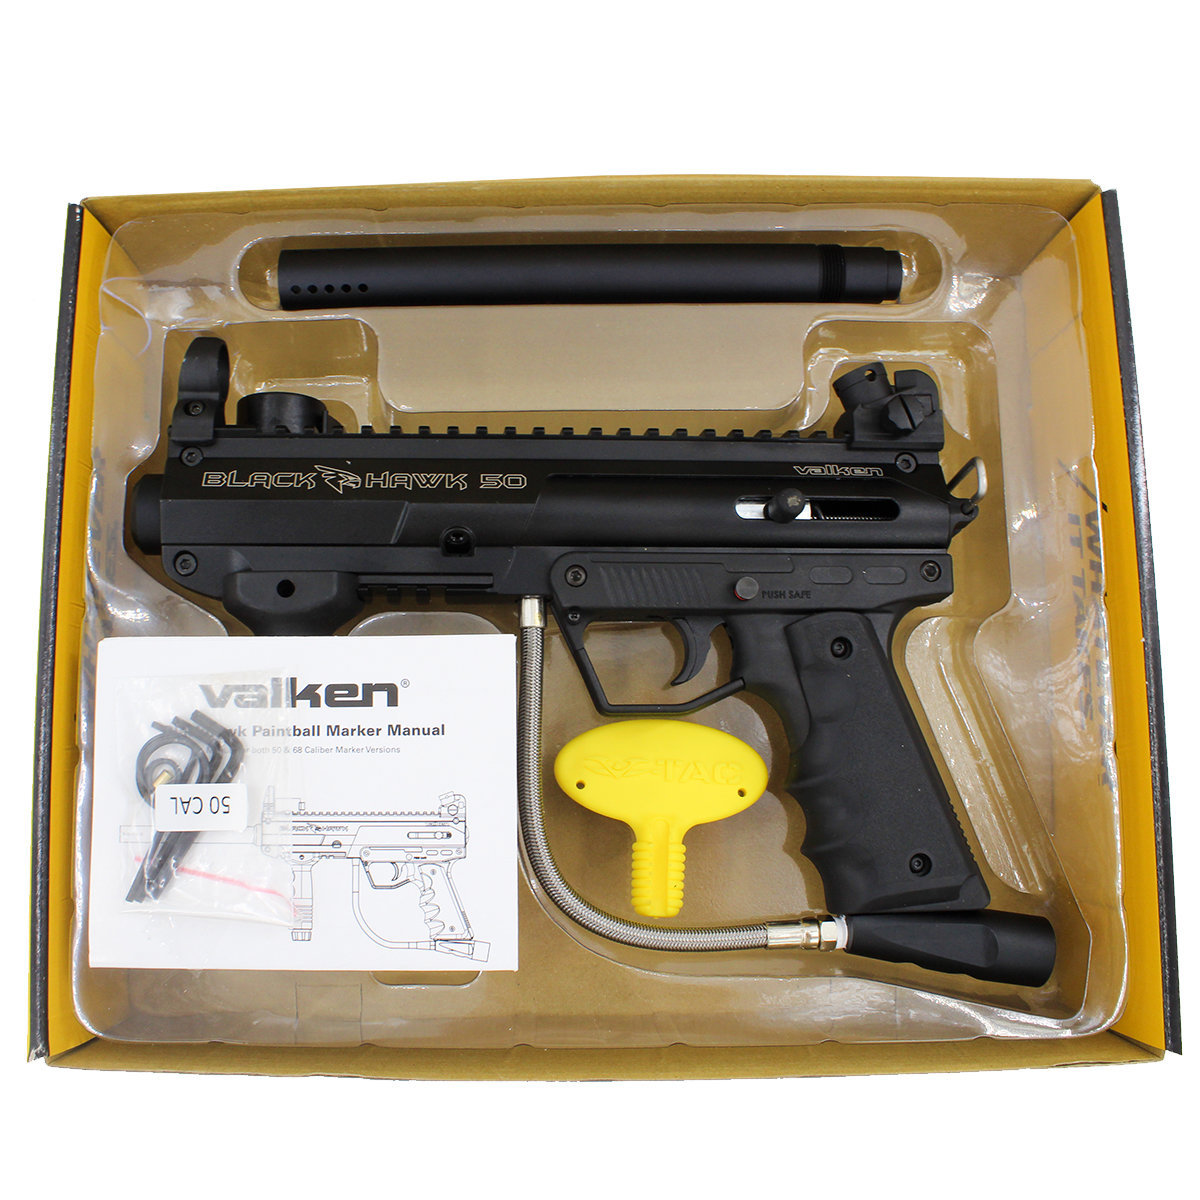 Safe Paintball Gun For Kids: Valken's Gotcha Paintball Gun